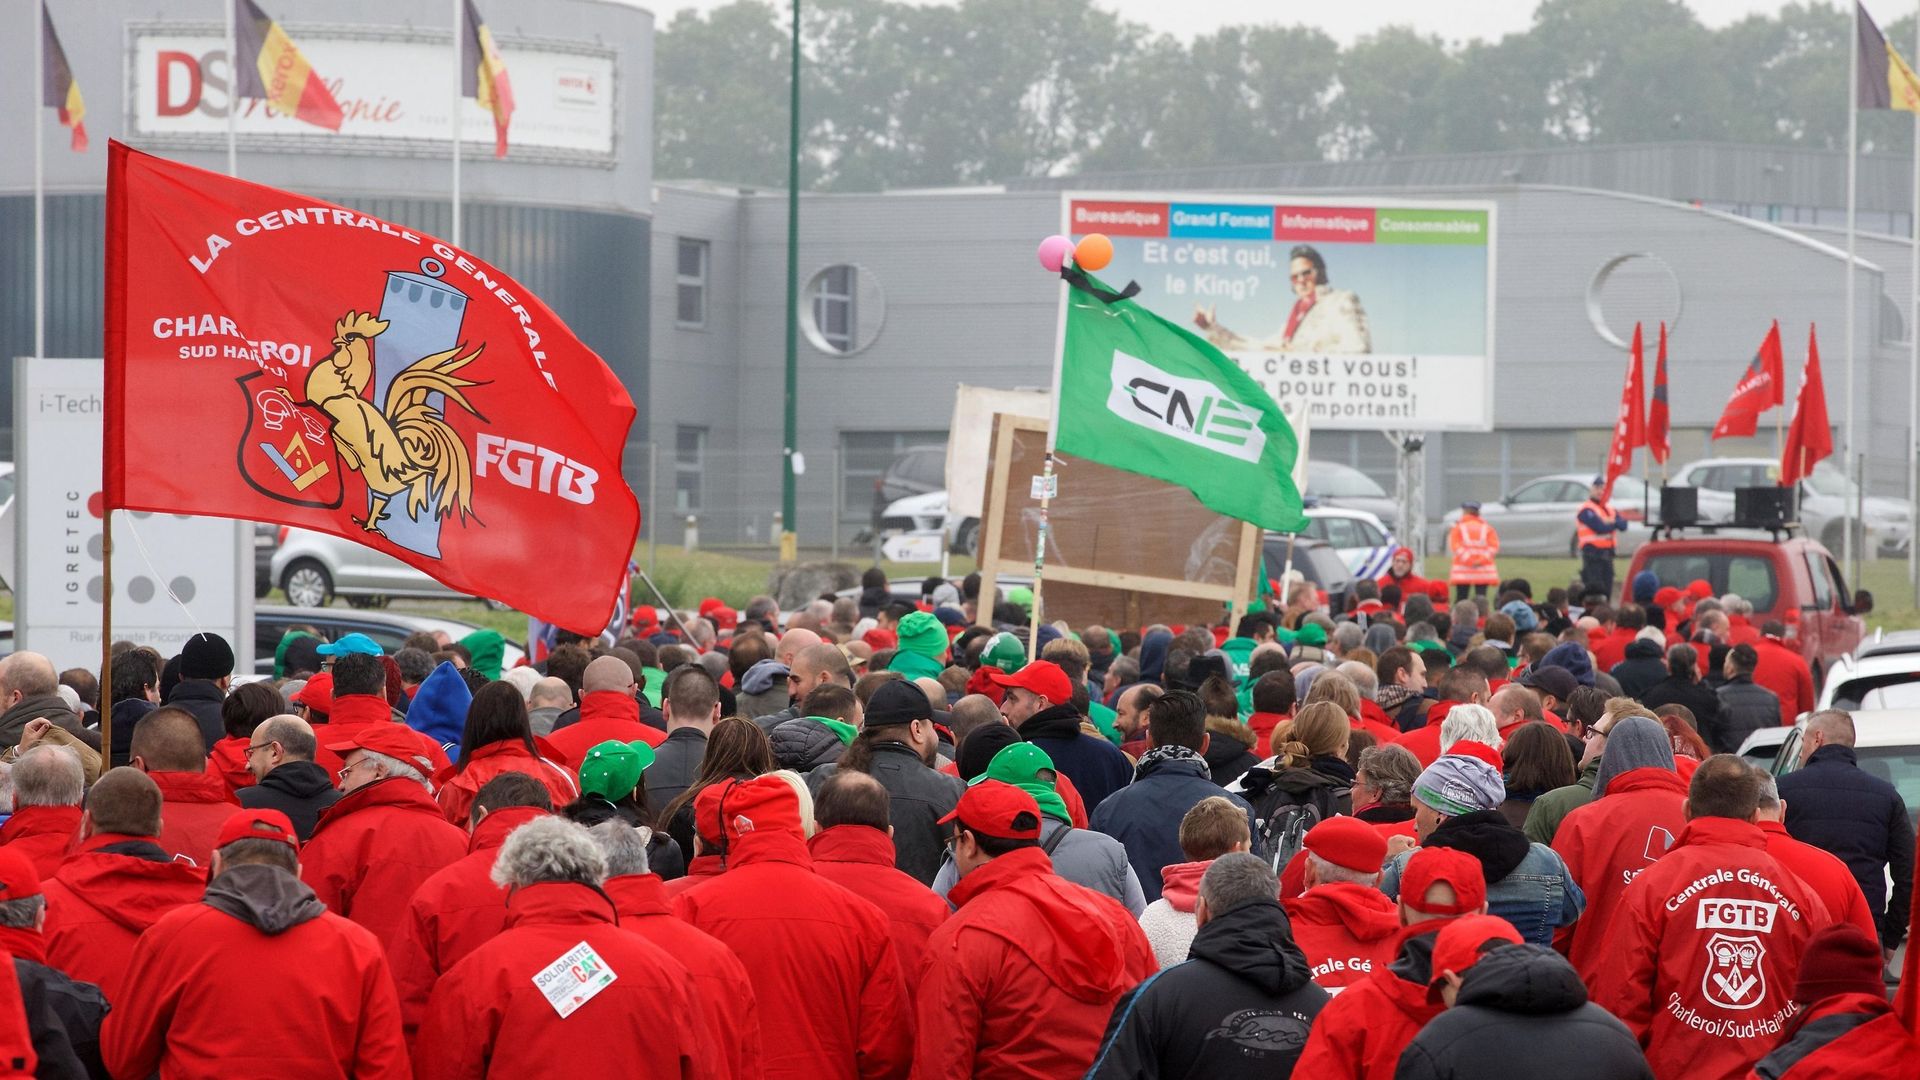 Grève générale et manifestations des gilets jaunes ce vendredi en Belgique